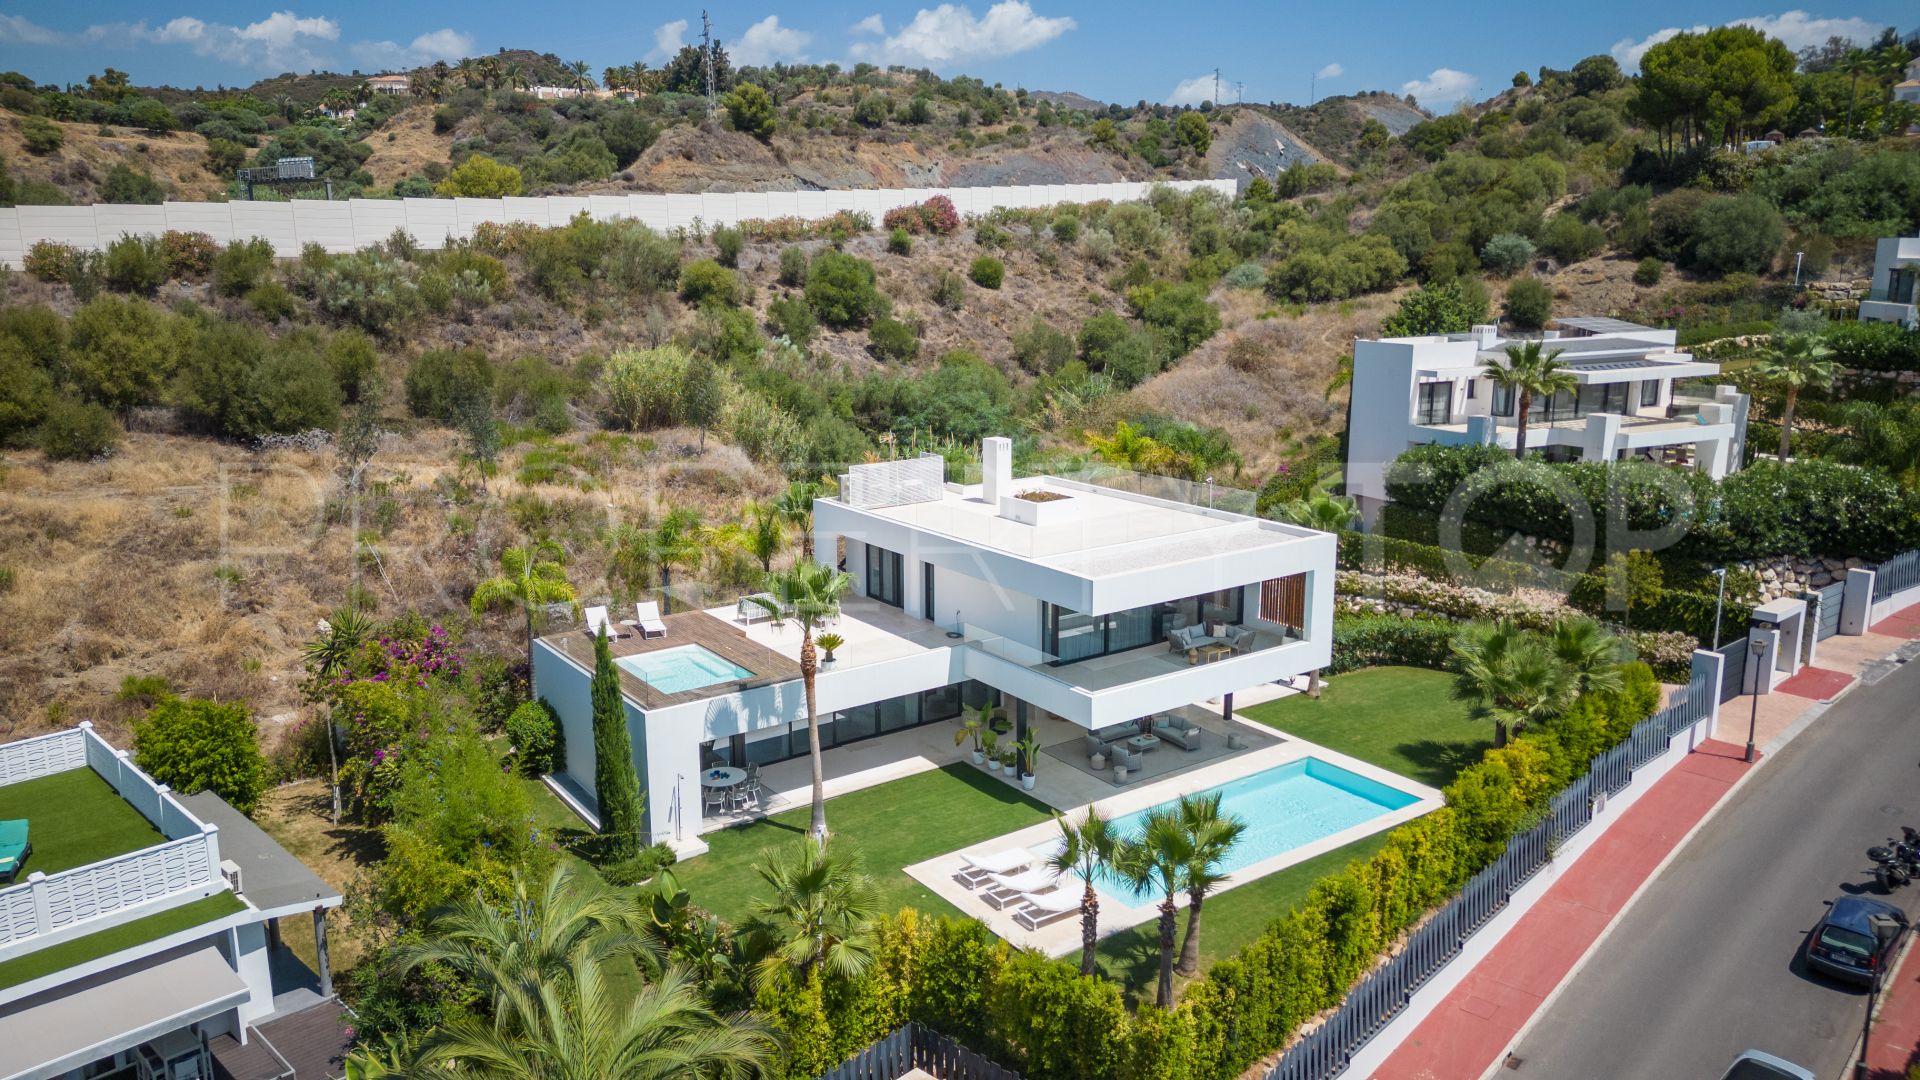 For sale villa in Los Olivos